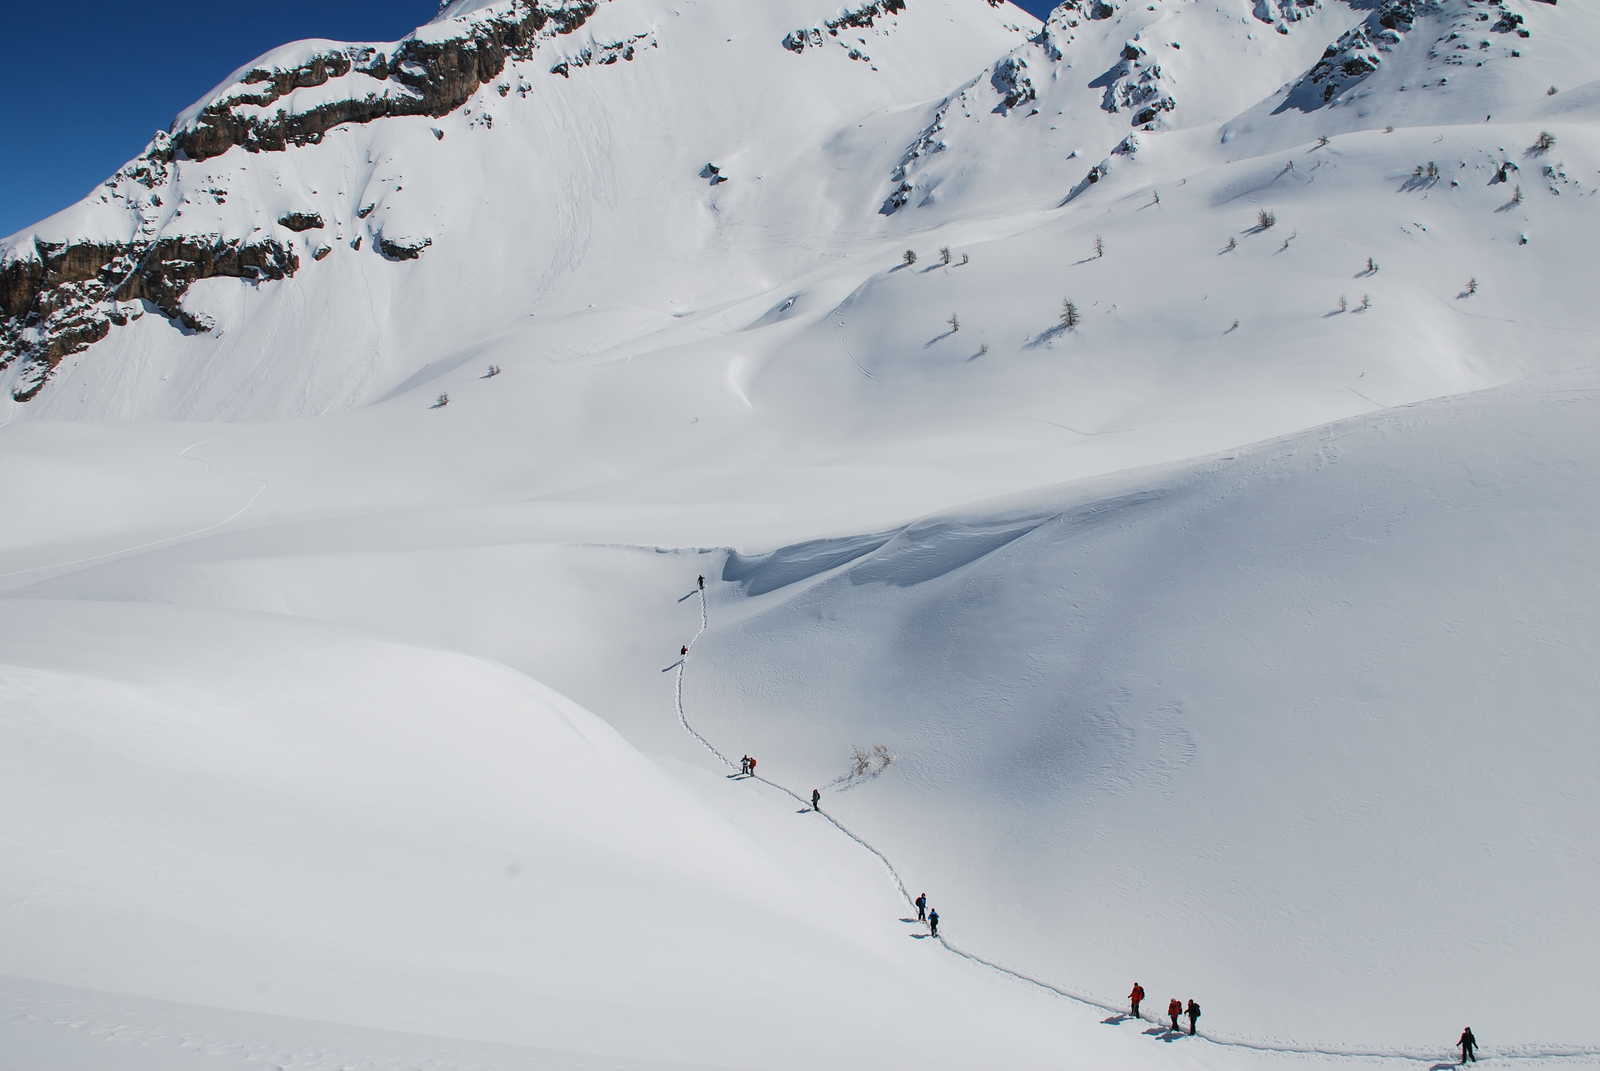 Location de raquette à neige à Guillestre au pied des Hautes Alpes